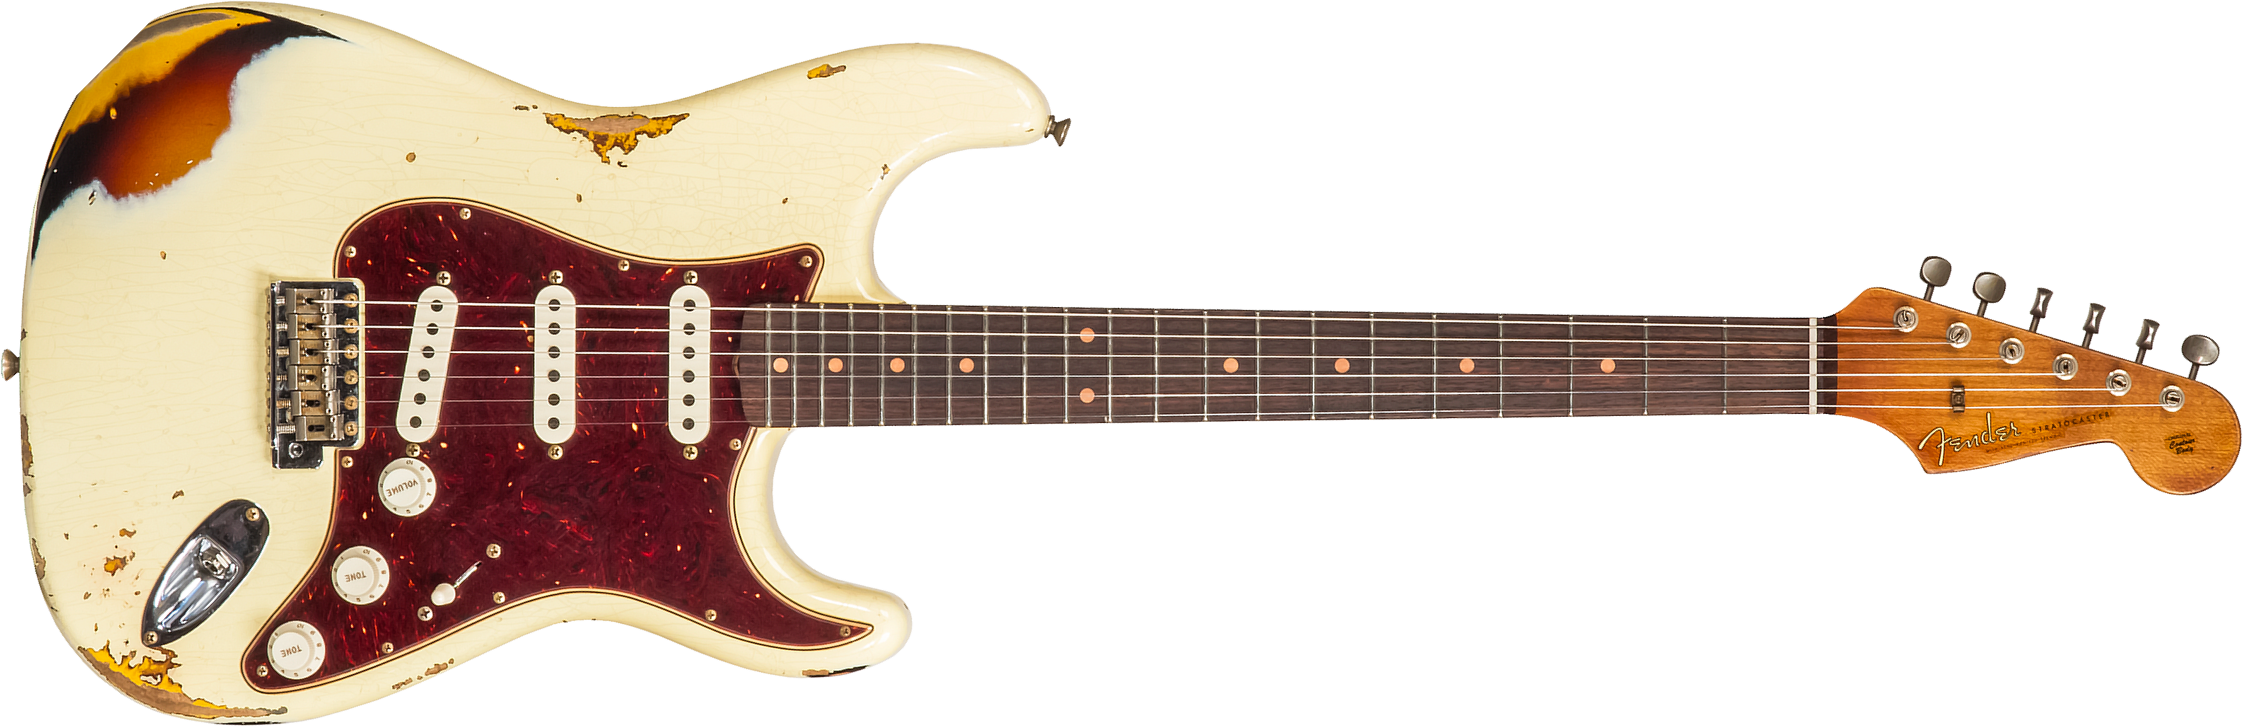 Fender Custom Shop Strat 1961 3s Trem Rw #cz563376 - Heavy Relic Vintage White/3-color Sunburst - Guitarra eléctrica con forma de str. - Main picture